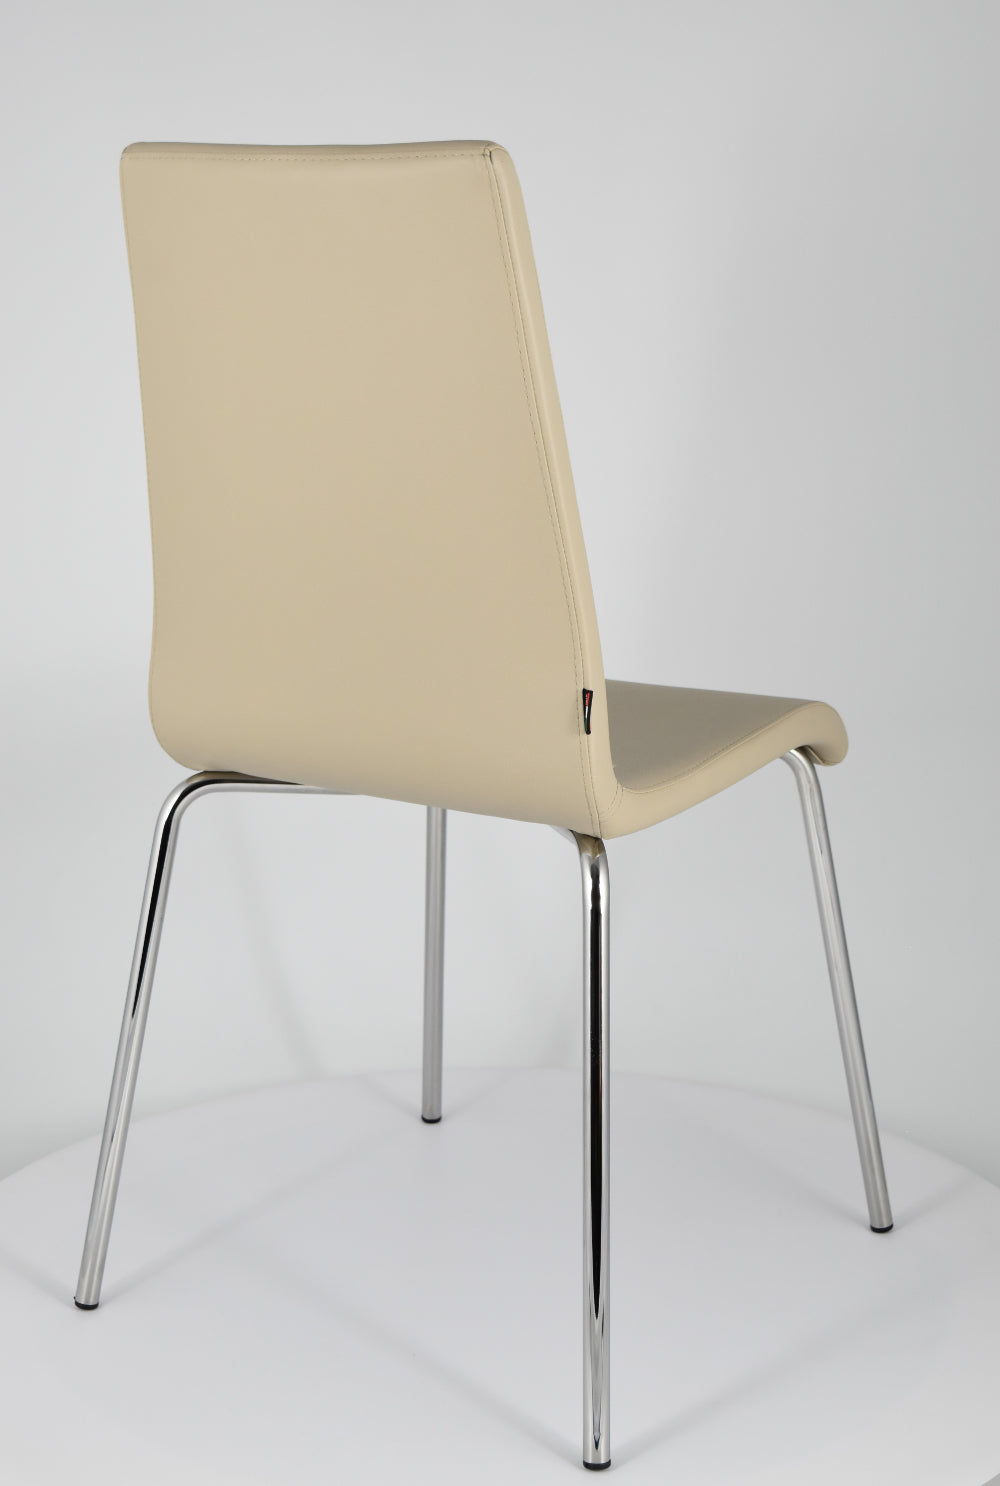 Tommychairs - Set 4 sillas Madrid con Patas de Acero Cromado y Asiento en Madera Multicapa, tapizado en Polipiel Color Lino